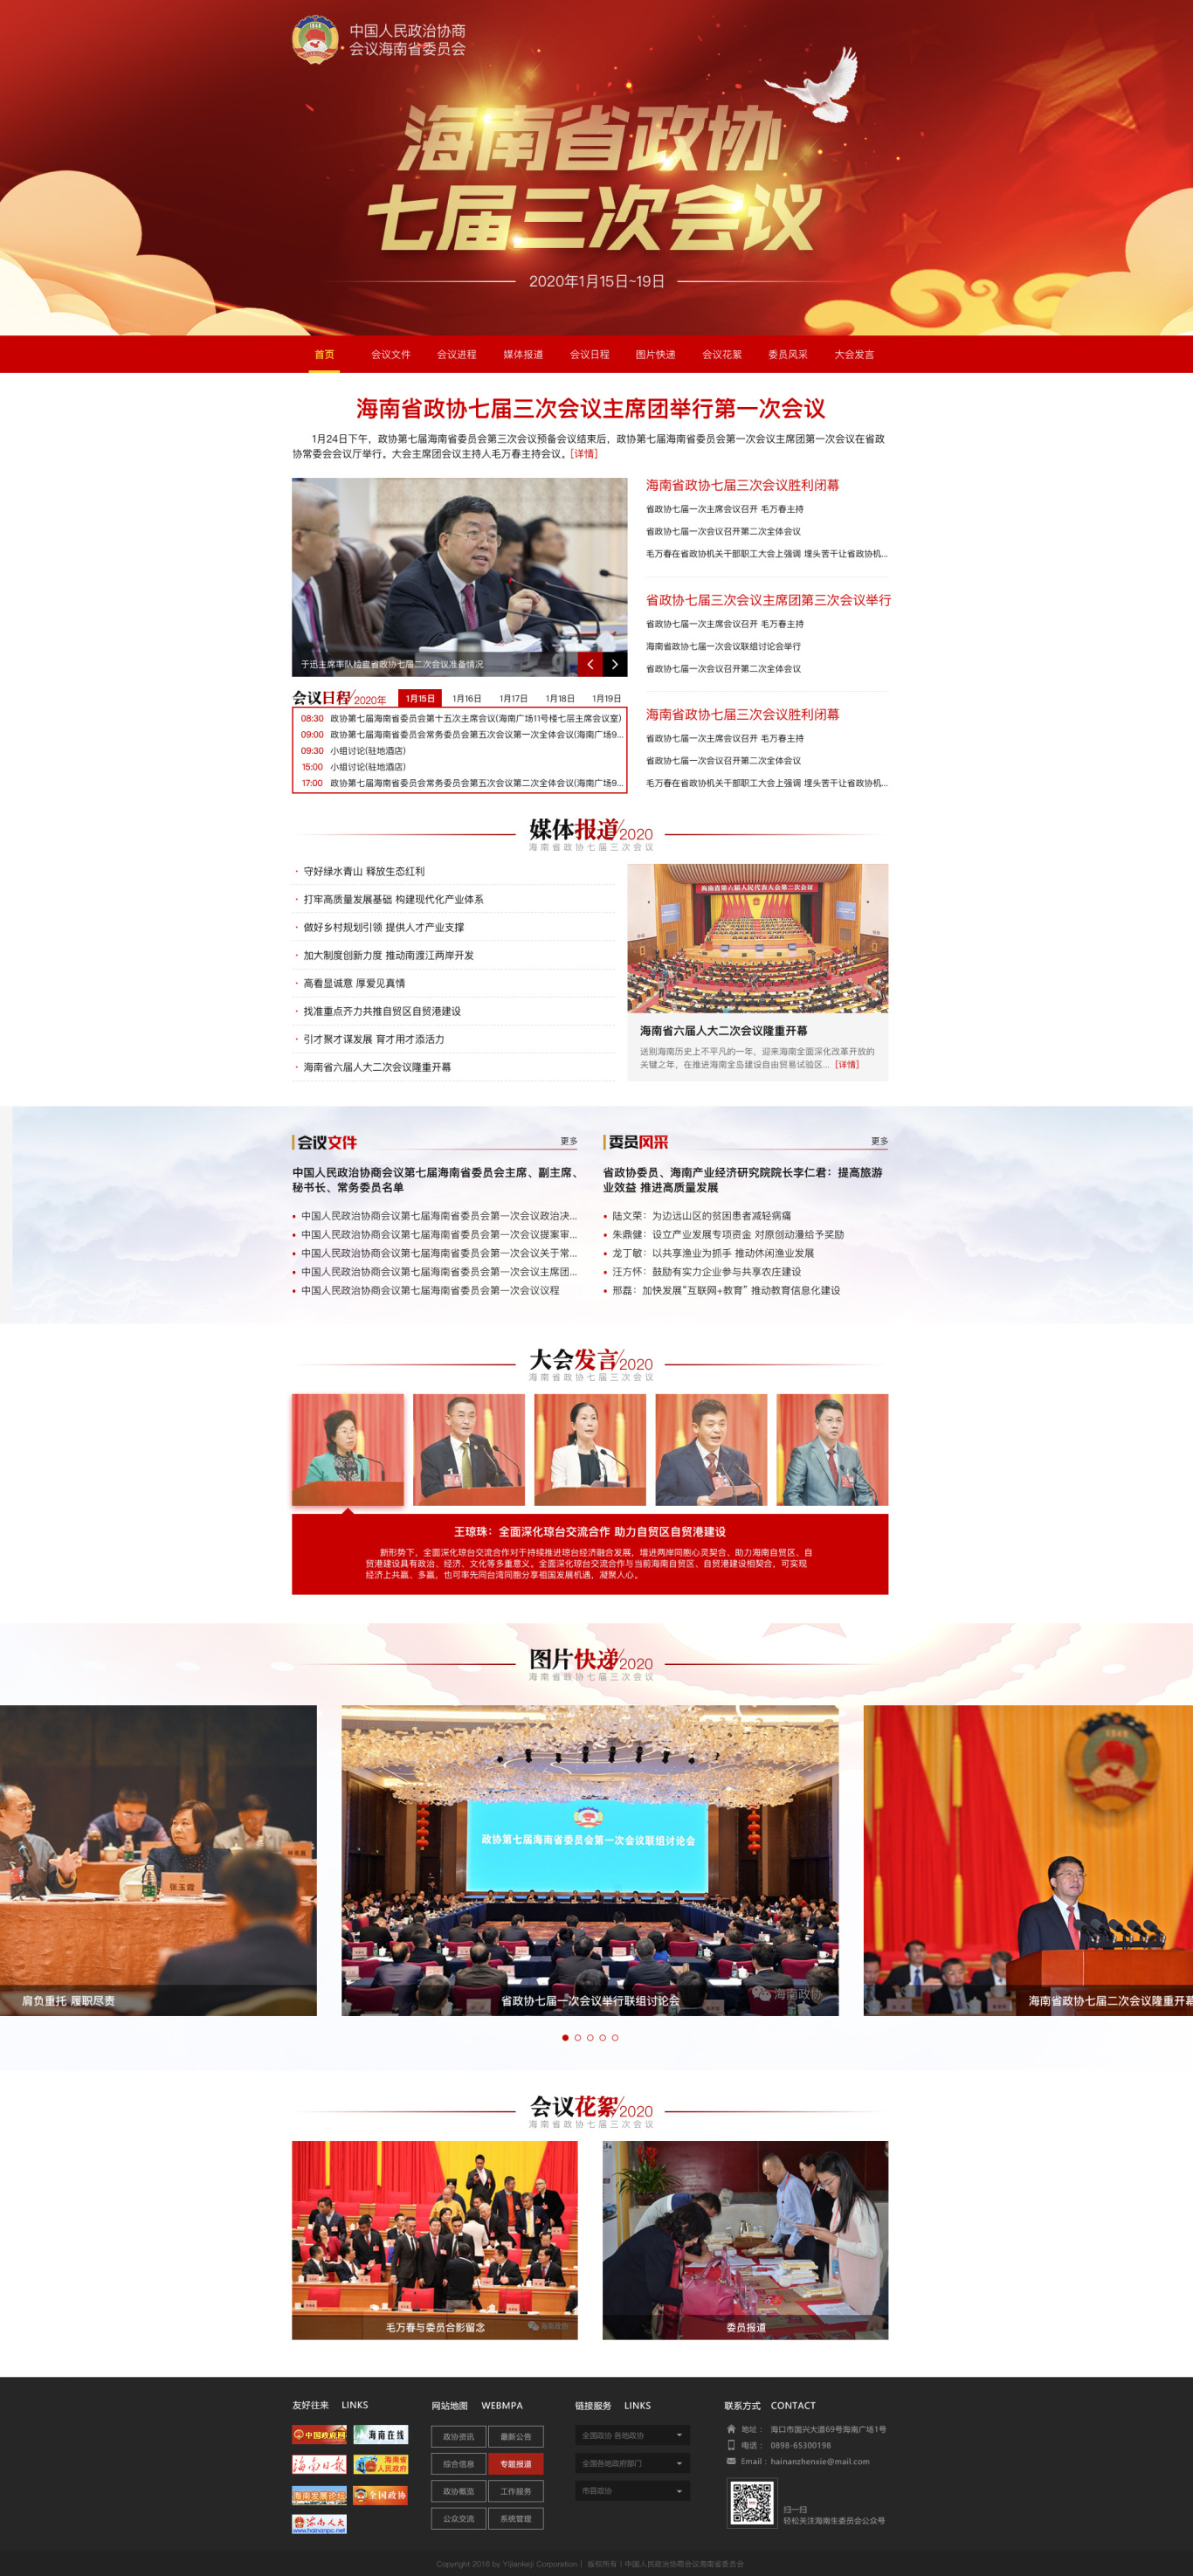  海南省政协会议专题页面设计图0